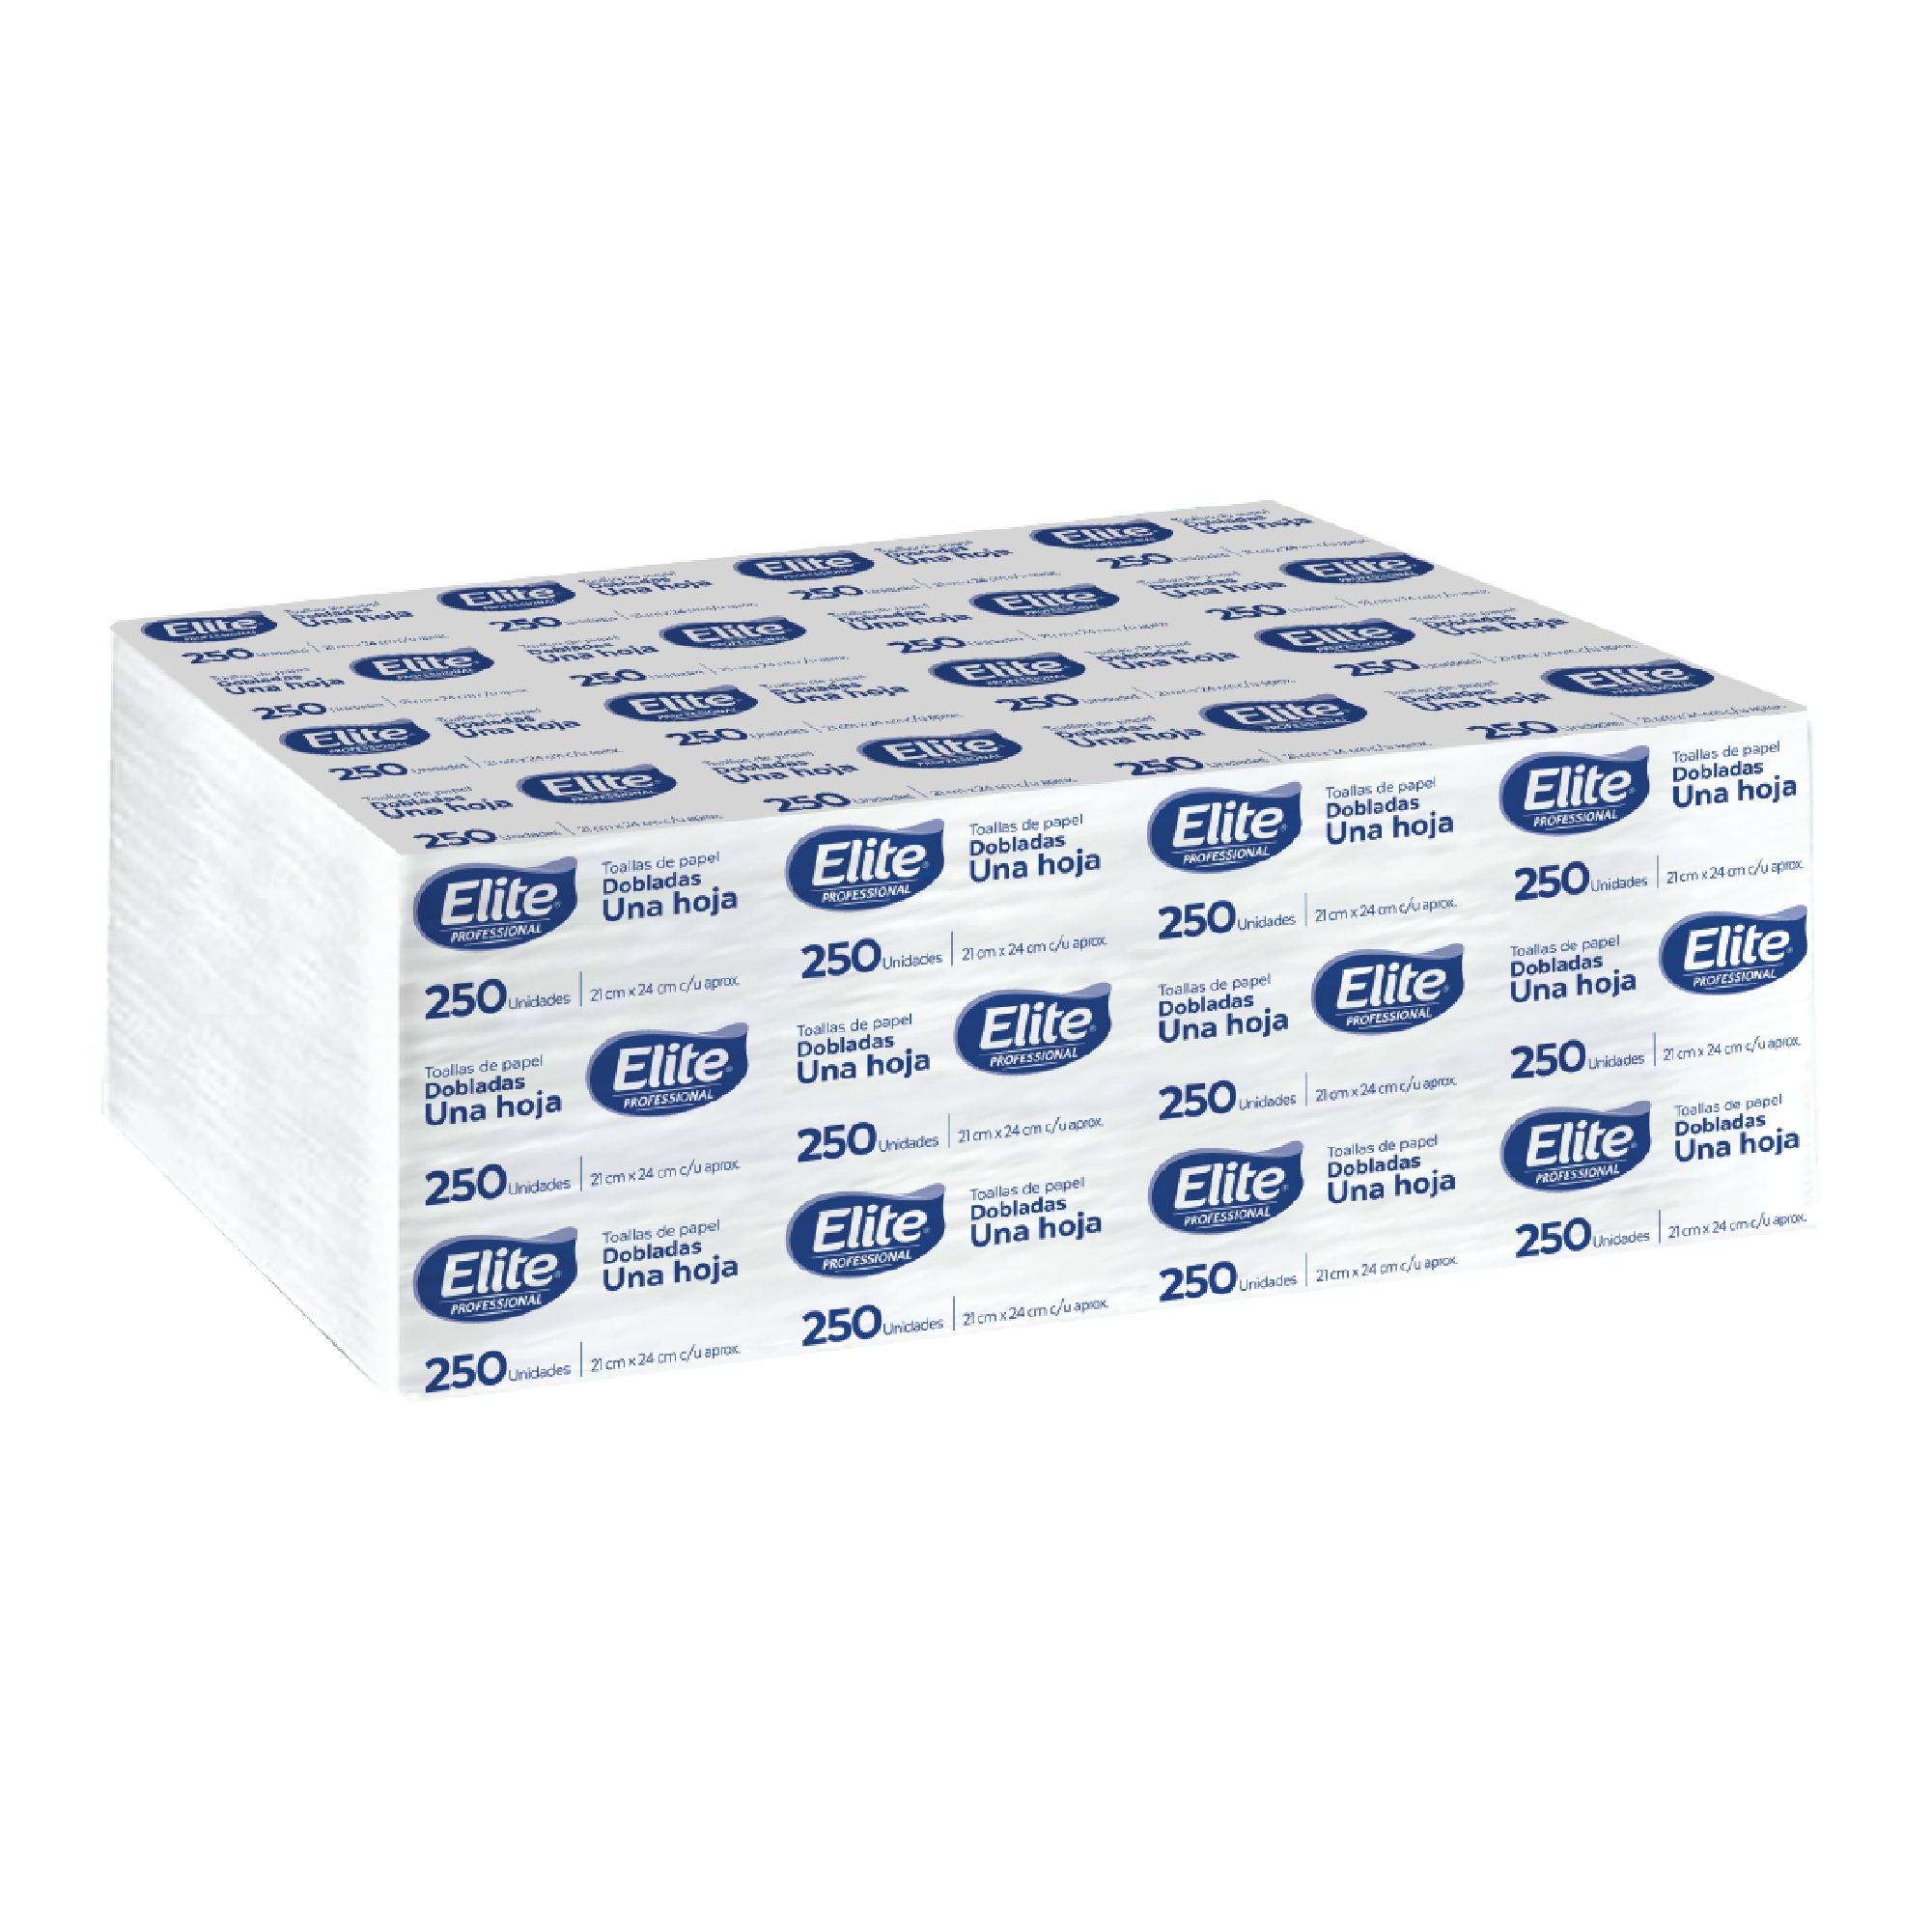 Elite 5995 toalla Interdoblada hoja sencilla color blanca 21 x 24, caja con 8 paquetes de 250 piezas cada uno